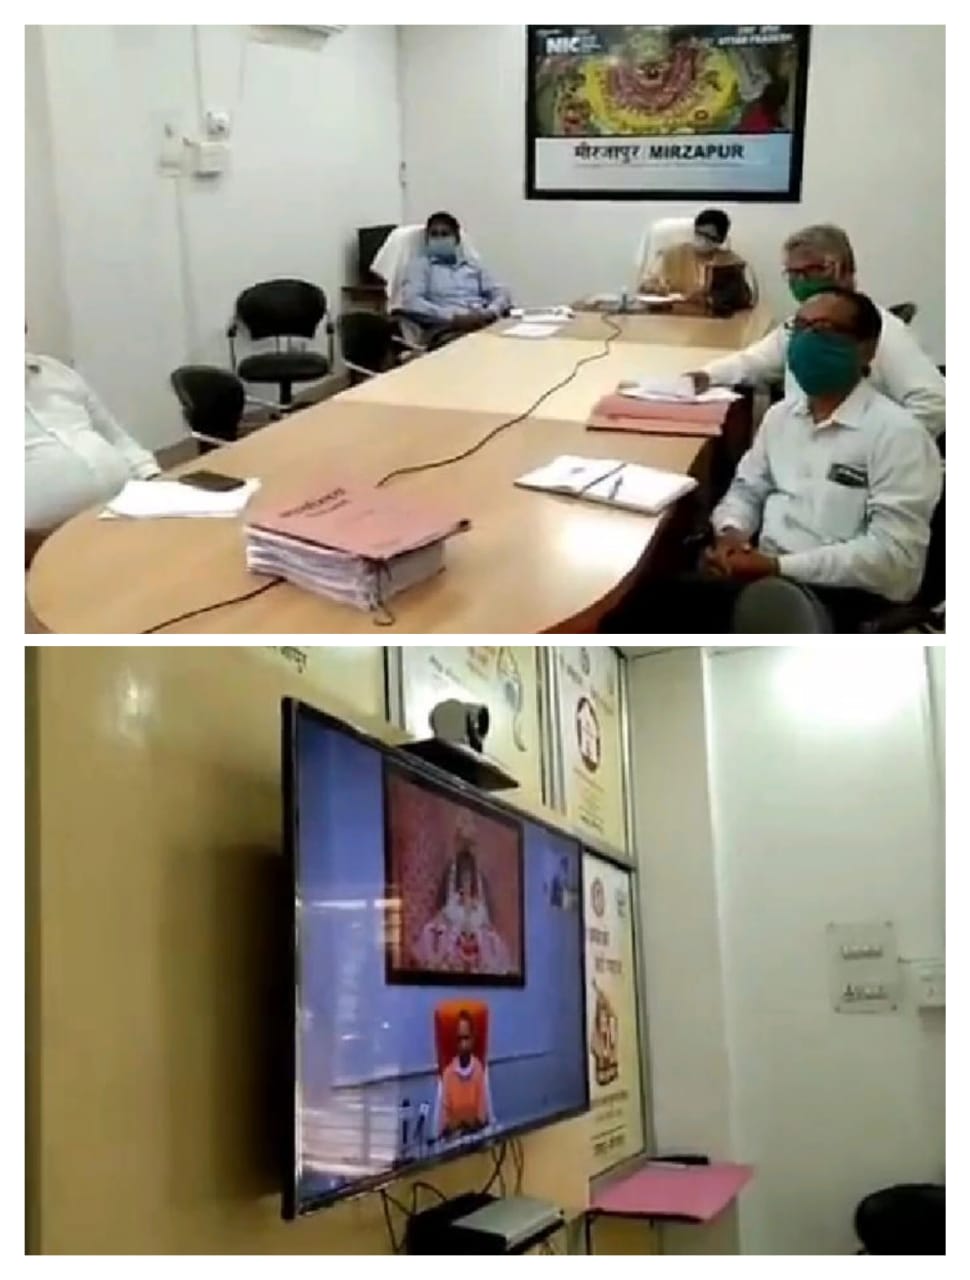 मिर्जापुर जिला कलेक्ट्रेट में मुख्य मंत्री उत्तर प्रदेश में वीडियो कॉन्फ्रेंसिंग के जरिए संचारी रोग के रोकथाम पर नियंत्रण अभियान की शुरूआत की।